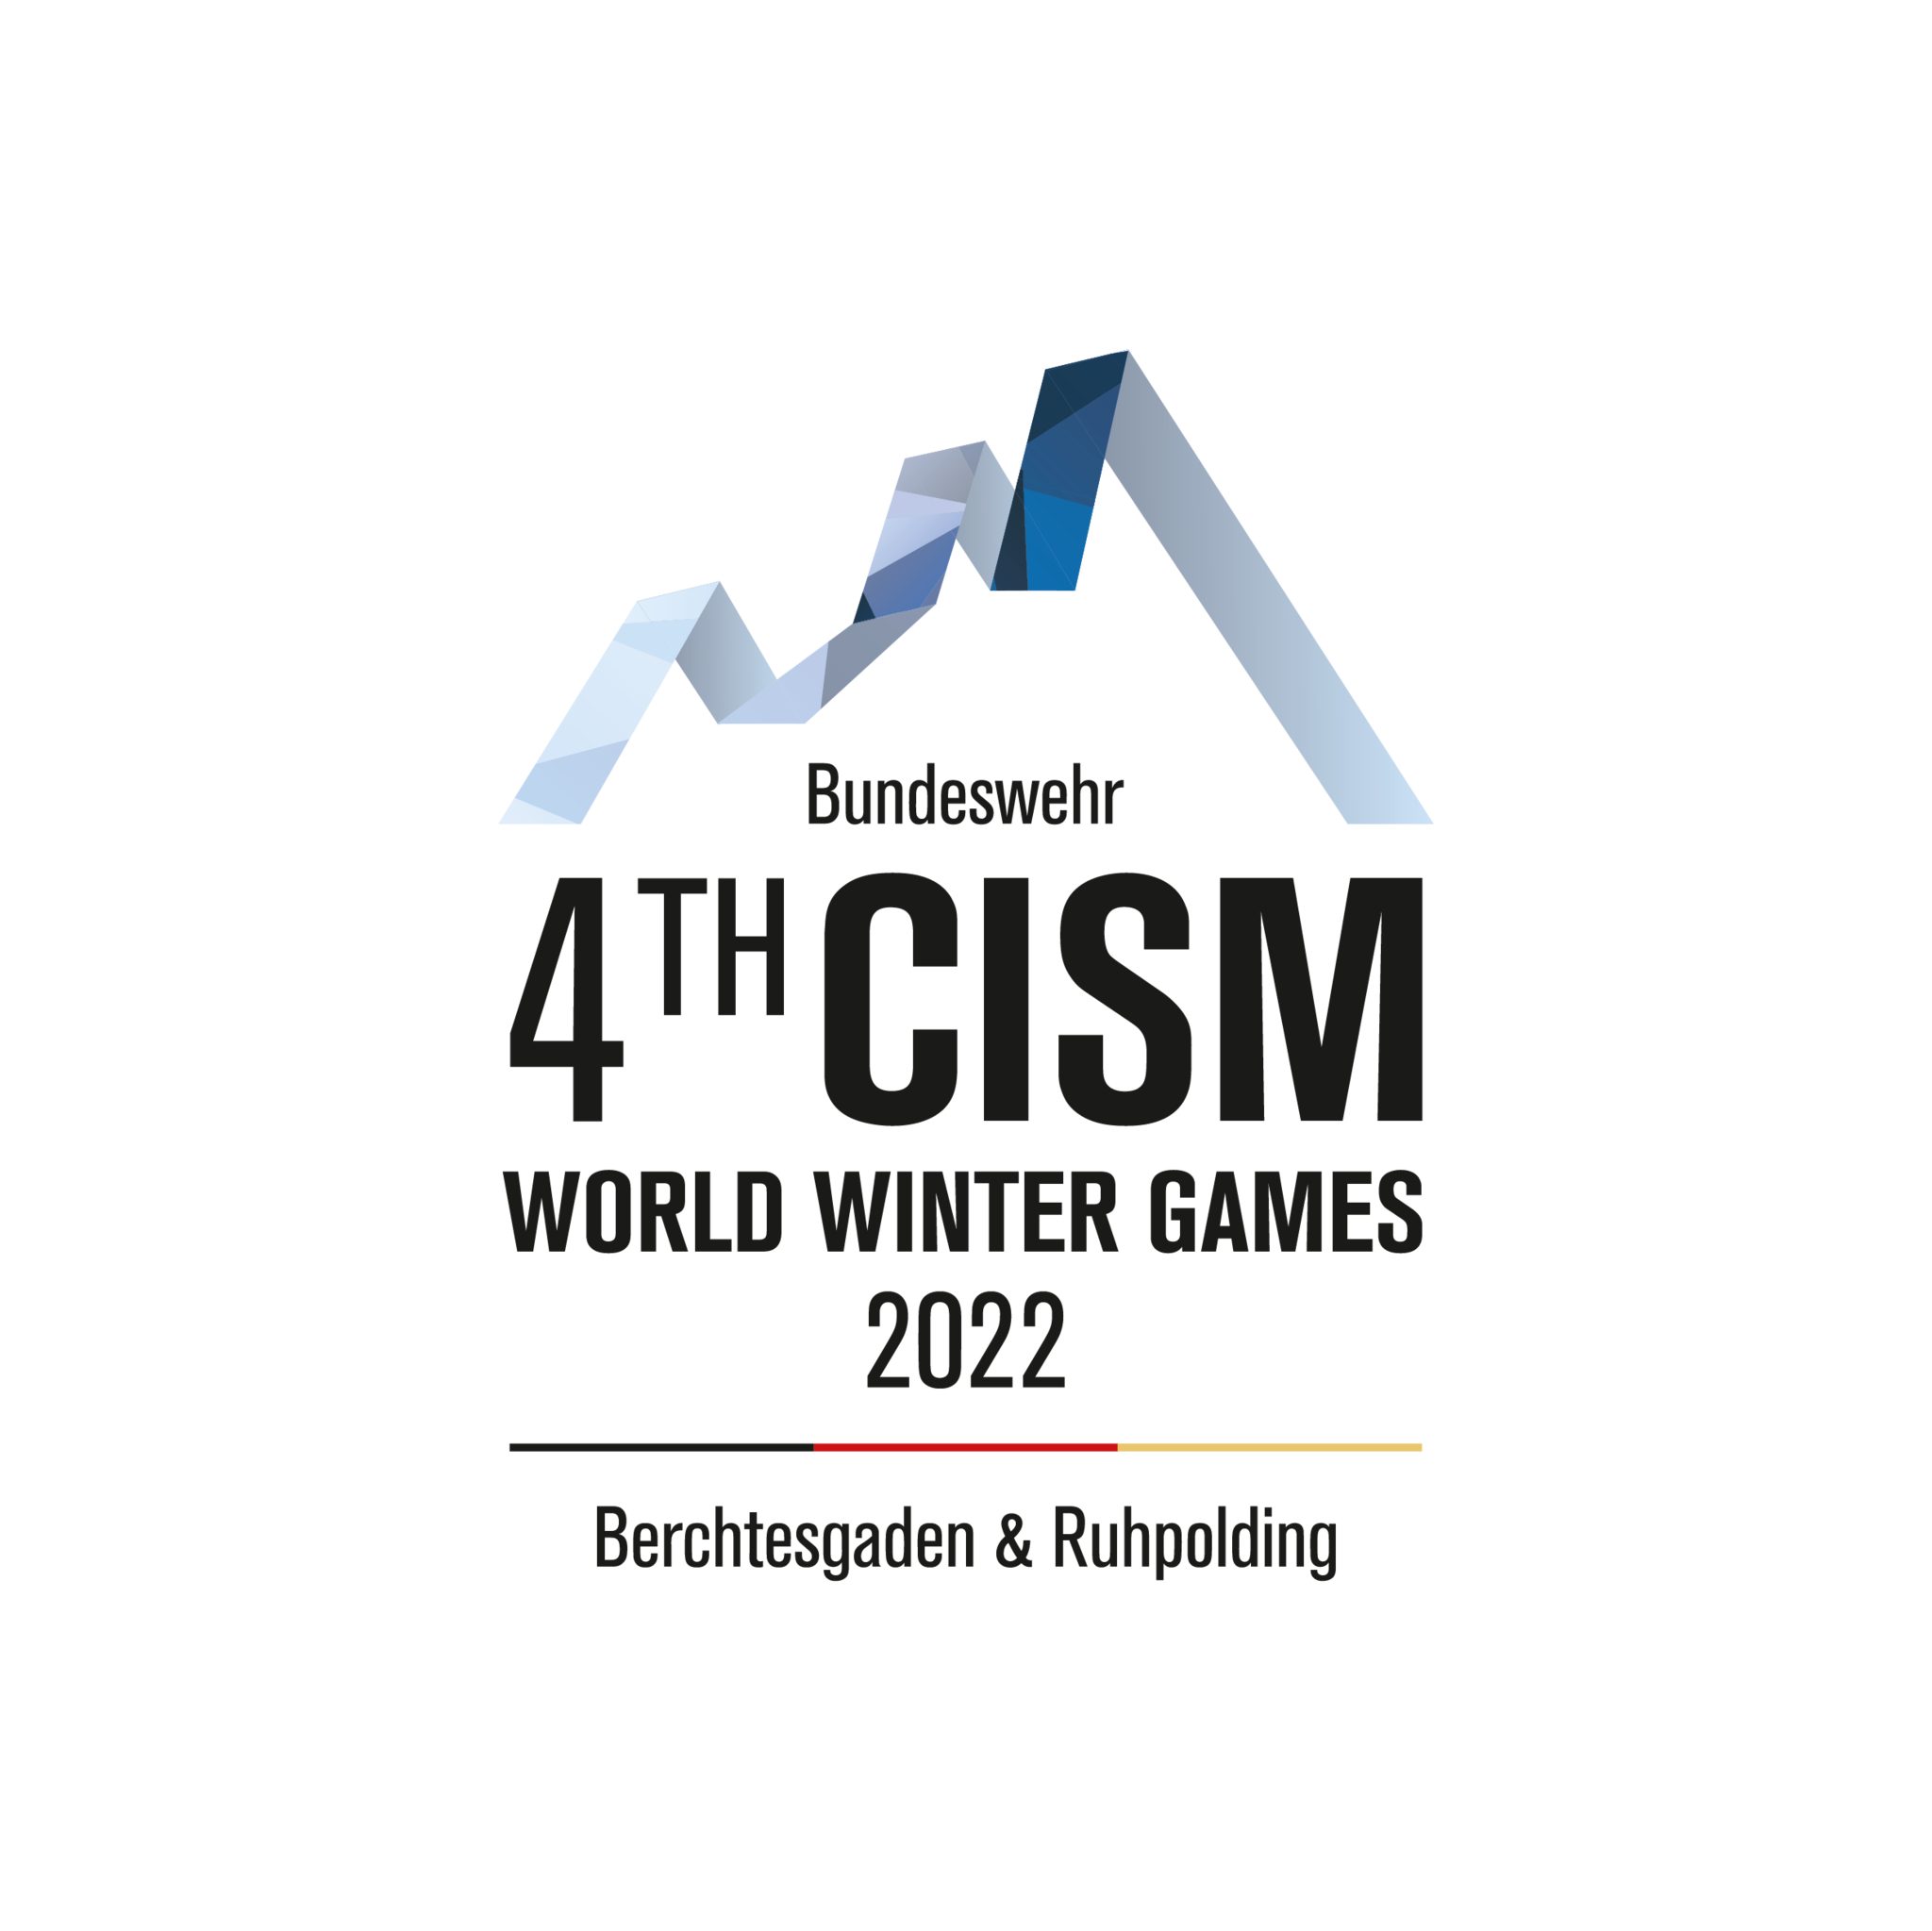 BW Logo 4th CISM hoch 4c RZ 2022 Zeichenfläche 1